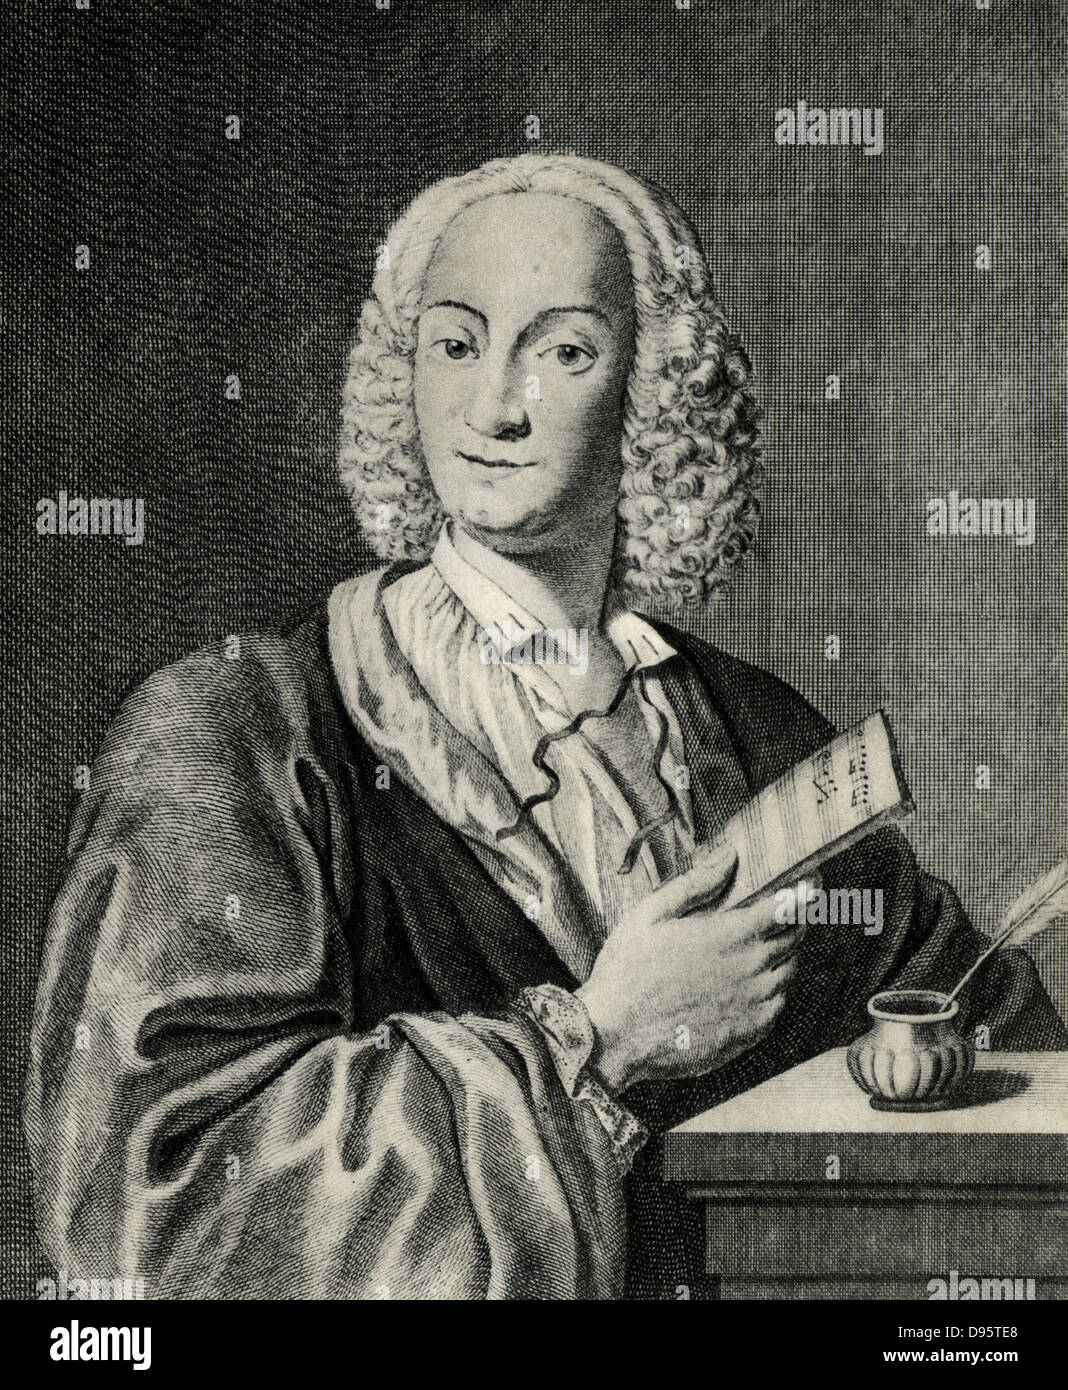 Antonio Vivaldi (1678-1741), violinista y compositor italiano nacido en Verona. Foto de stock